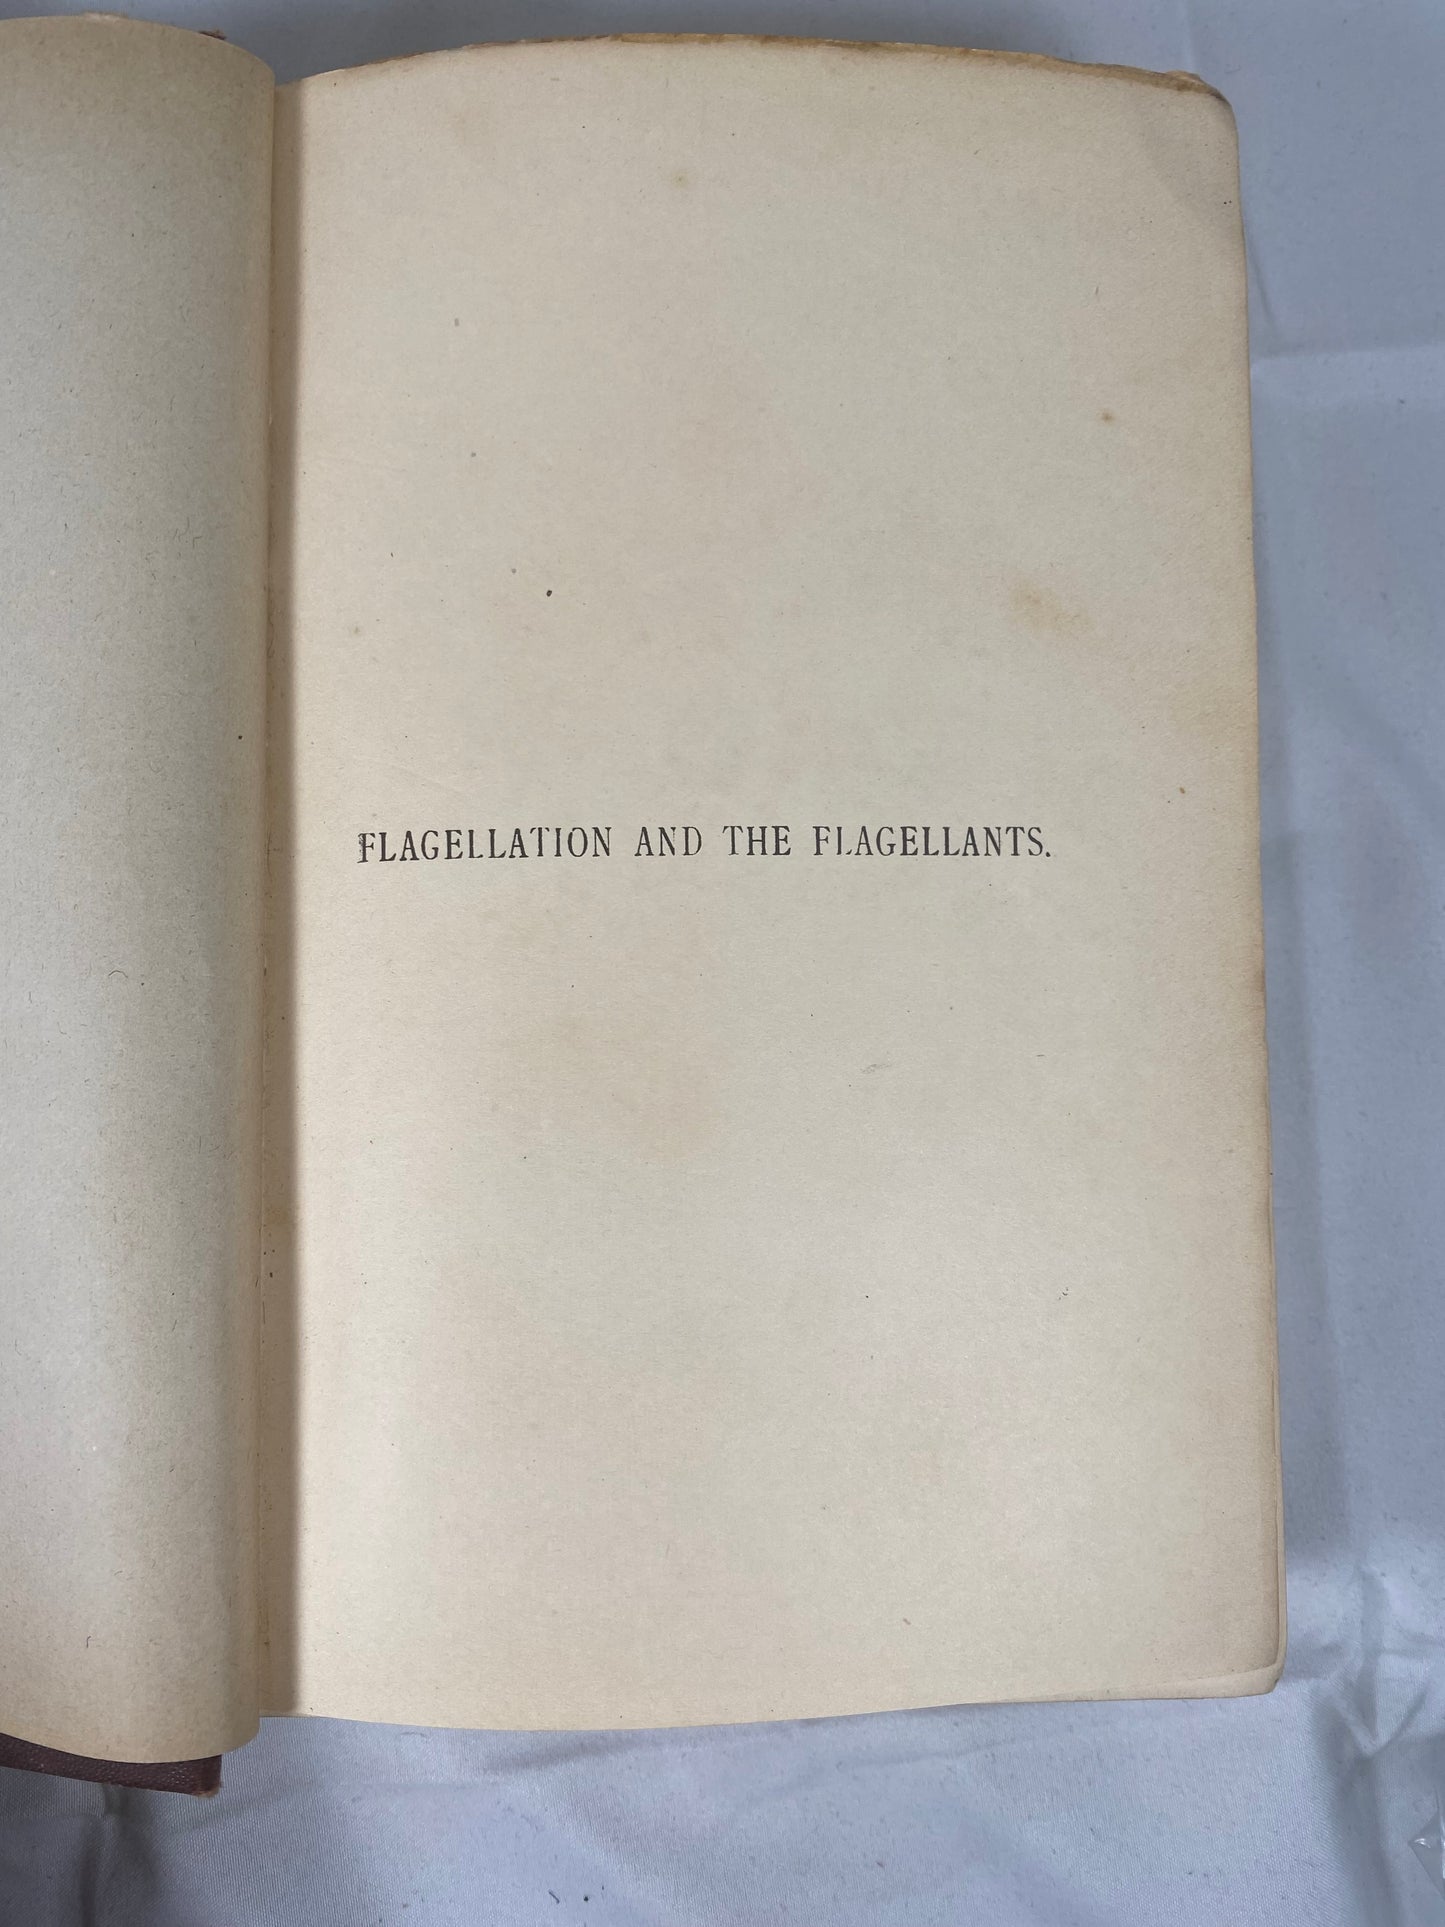 鞭笞与鞭笞者：鞭笞的历史。精美古书，第一修订版，1896 年。